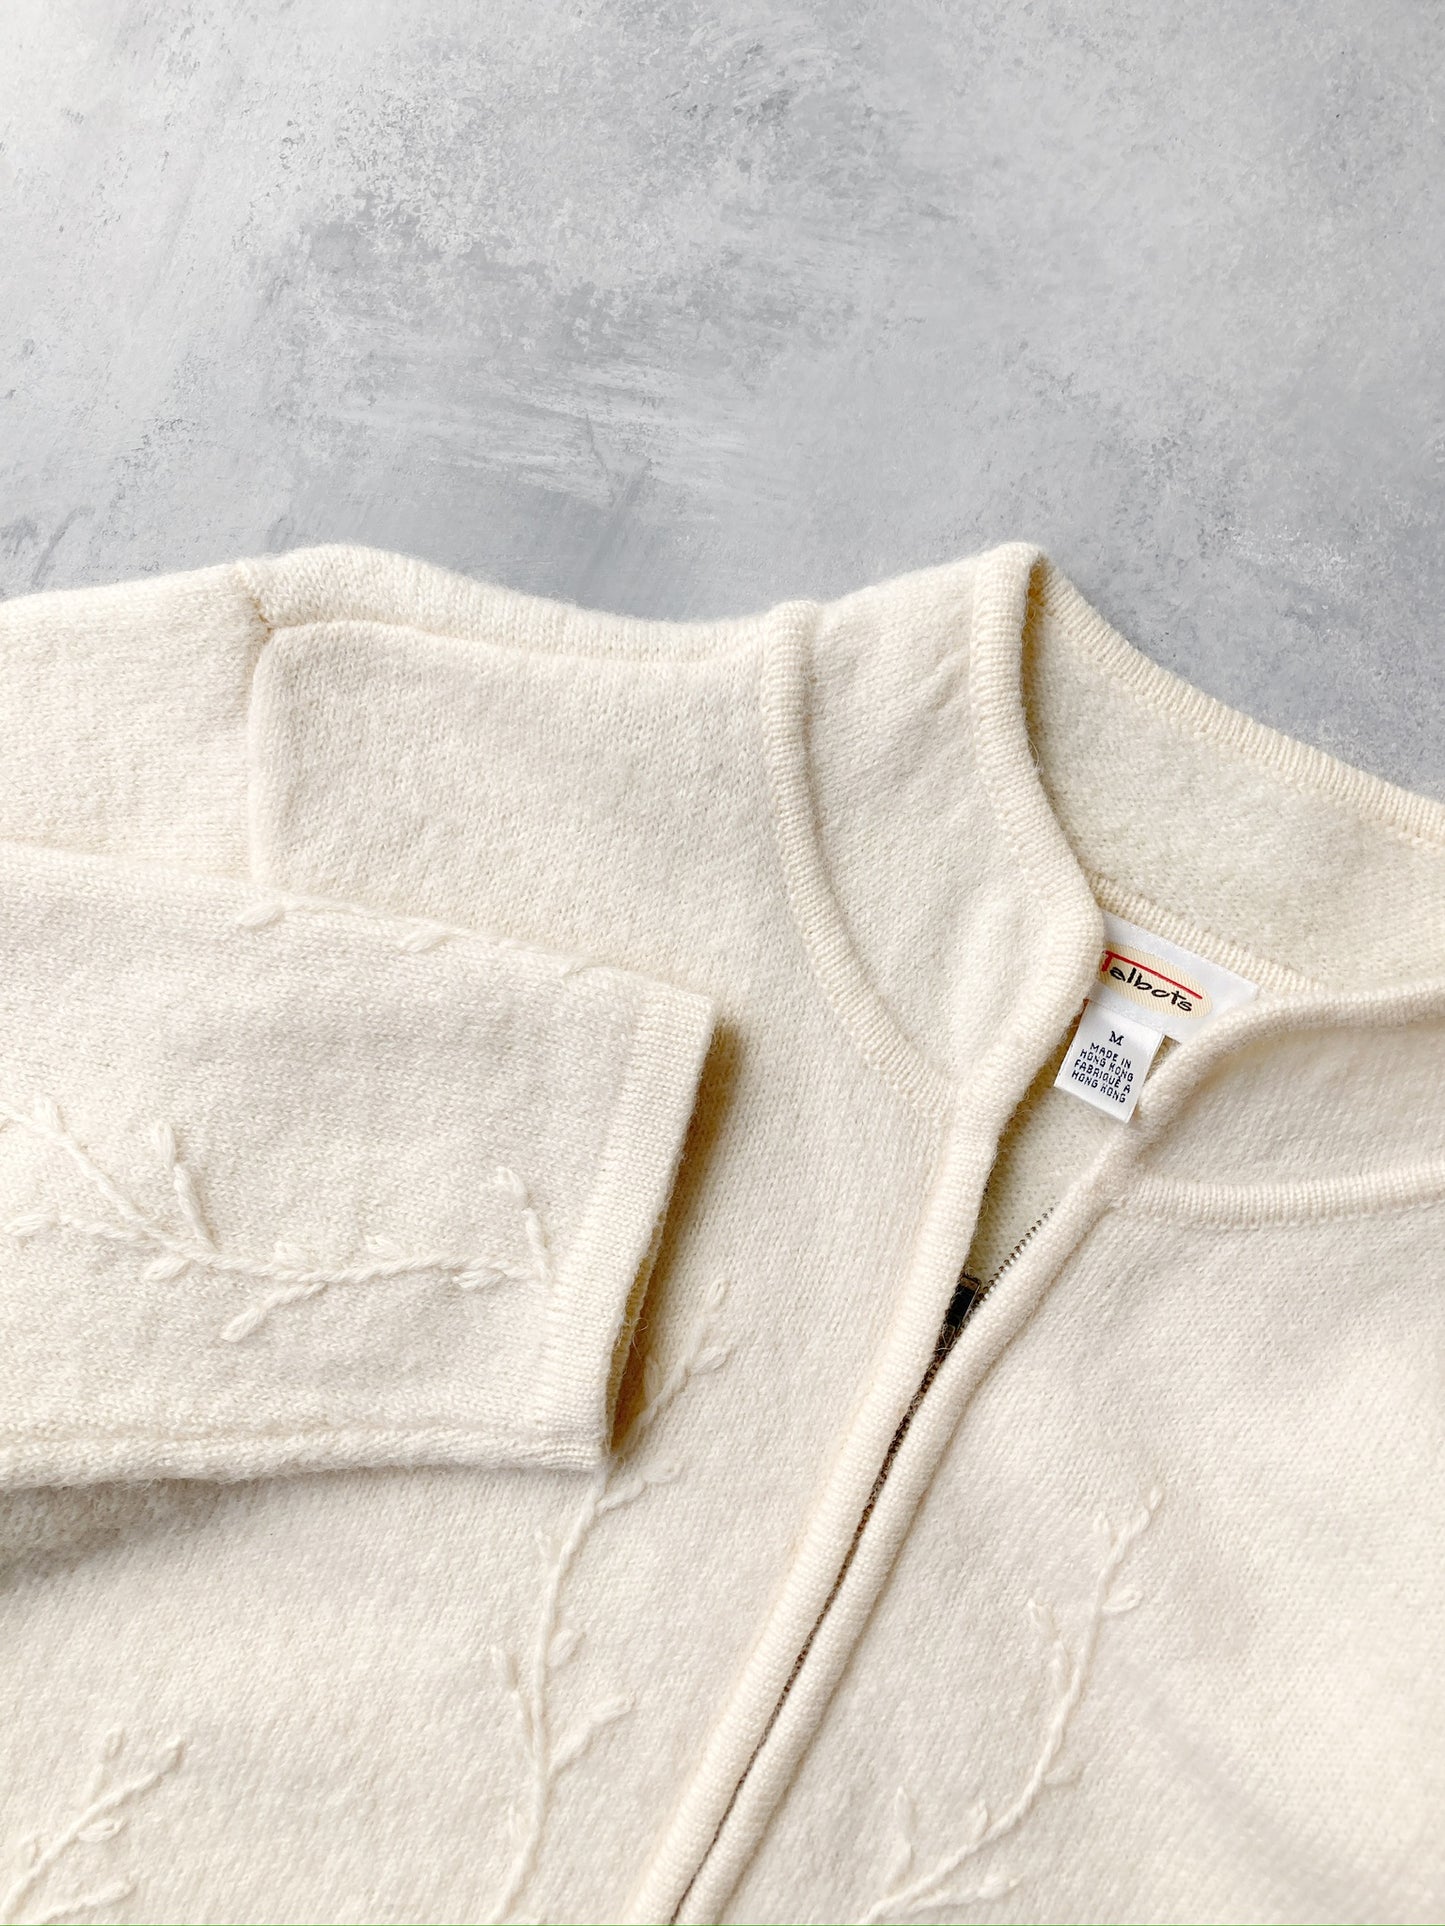 Embroidered Wool Jacket 90's - Medium